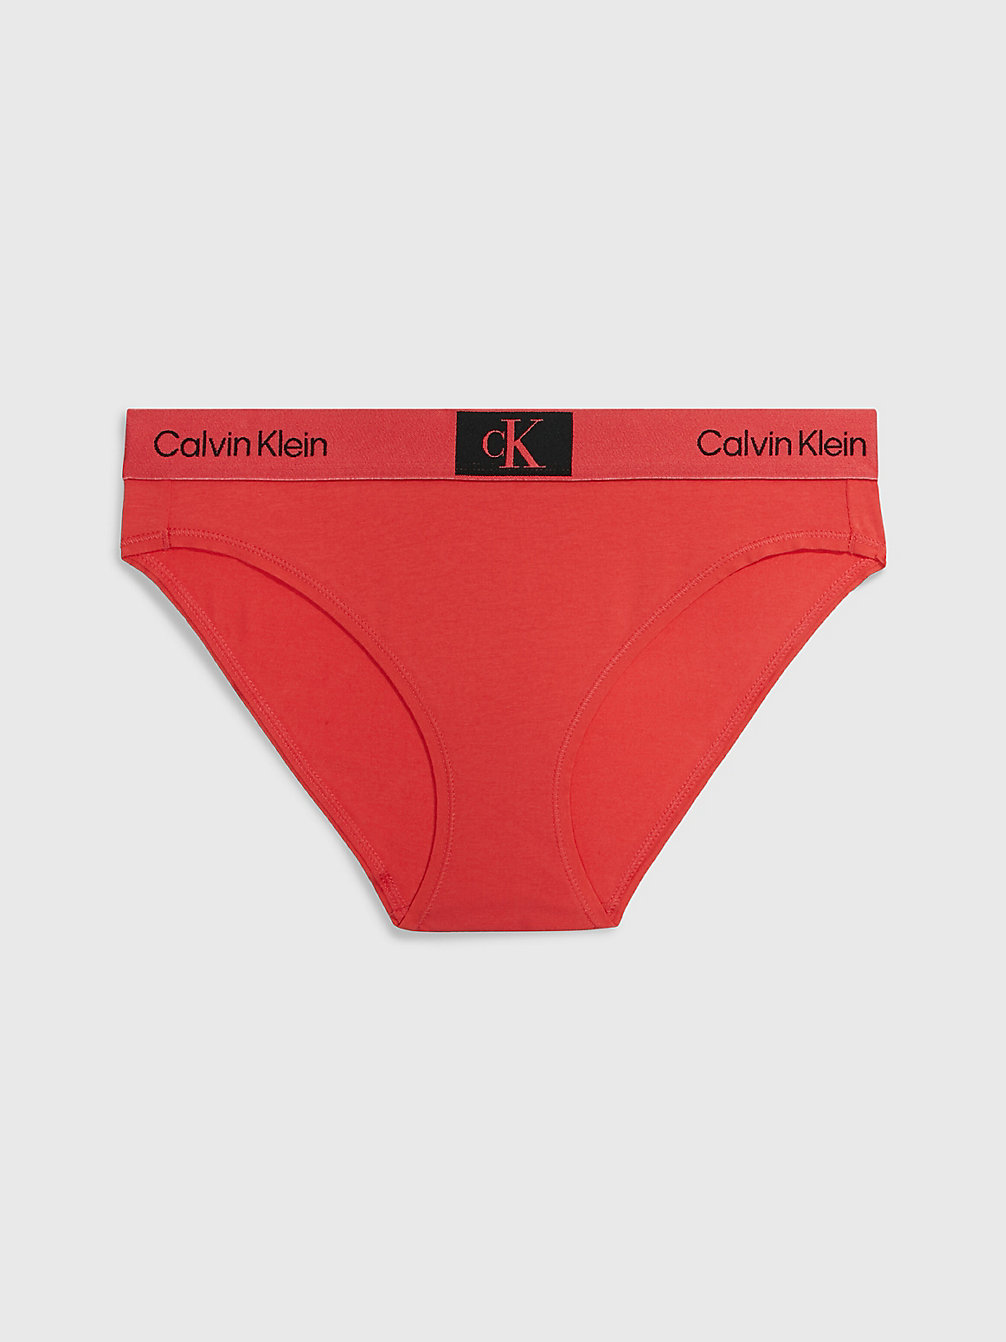 COOL MELON > Slips - Ck96 > undefined Damen - Calvin Klein